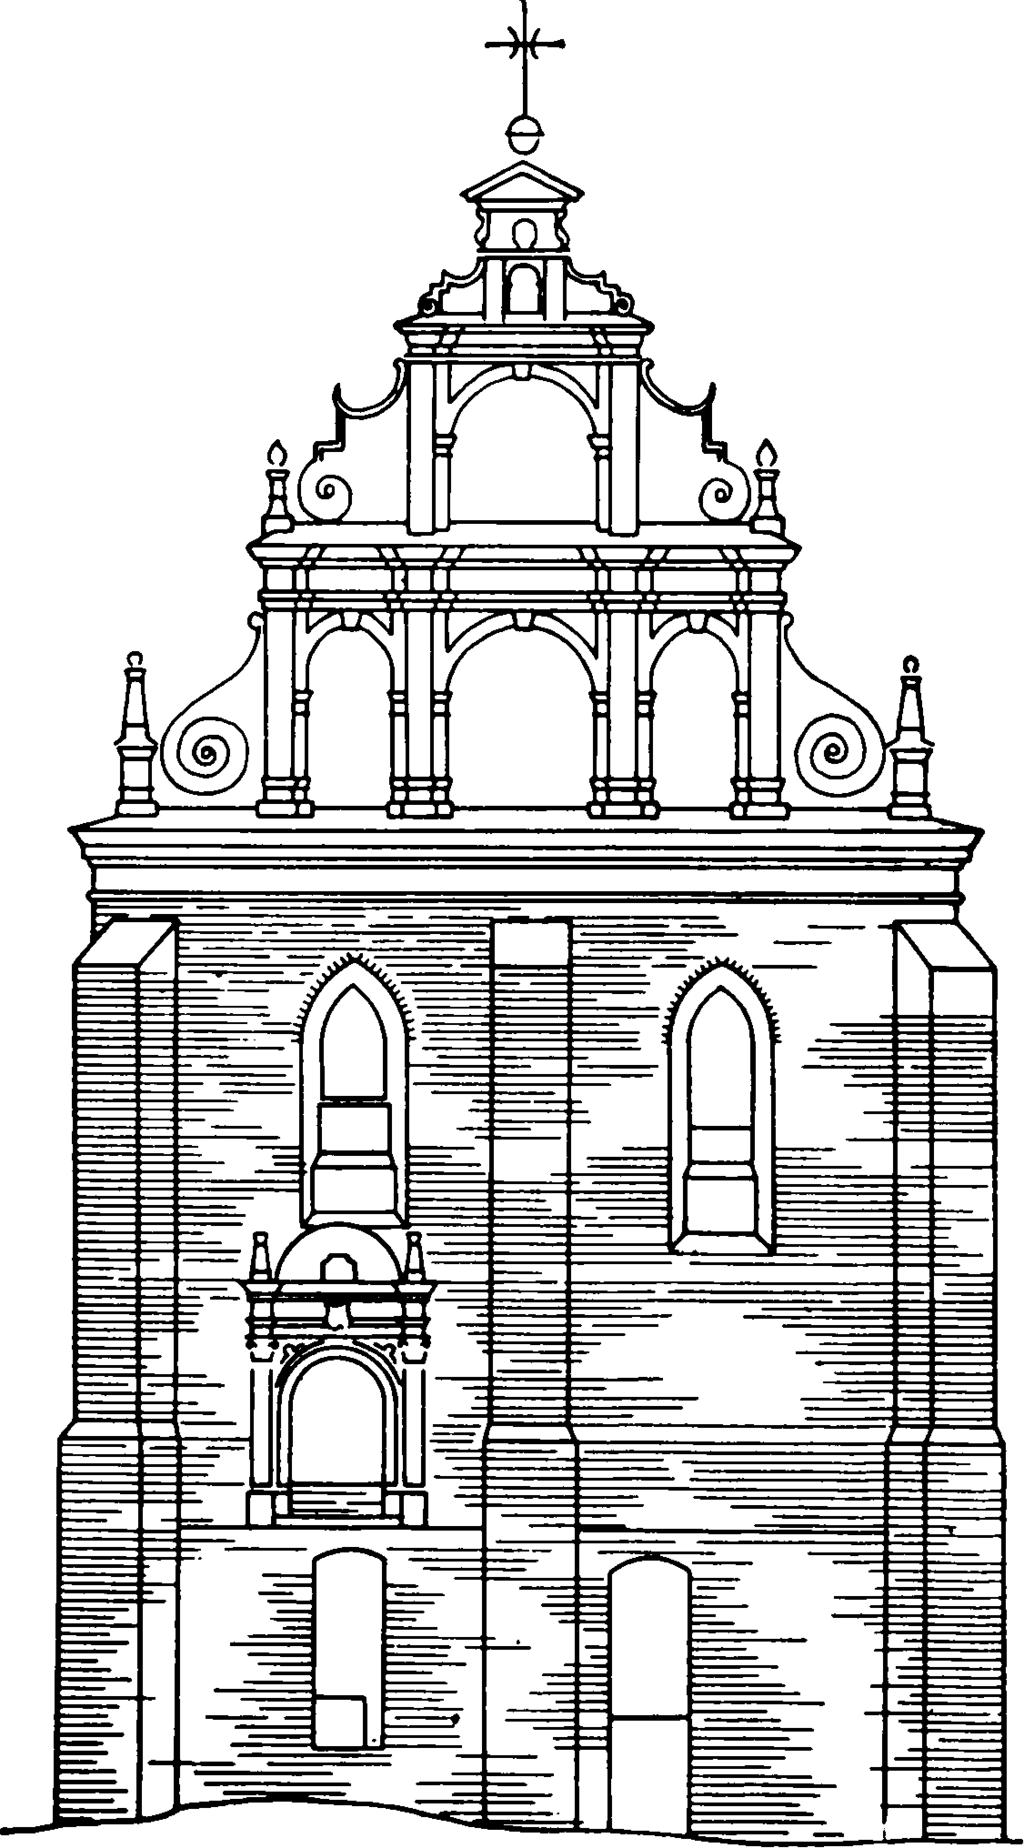 Po zdjęciu zmurszałego daszku drewnianego, pokrytego blachą ocynkowaną, nad grubszą ścianą dolnego prezbiterium ukazał się jakby chodnik ceglany o bardzo nieregularnej powierzchni, szerokości powyżej